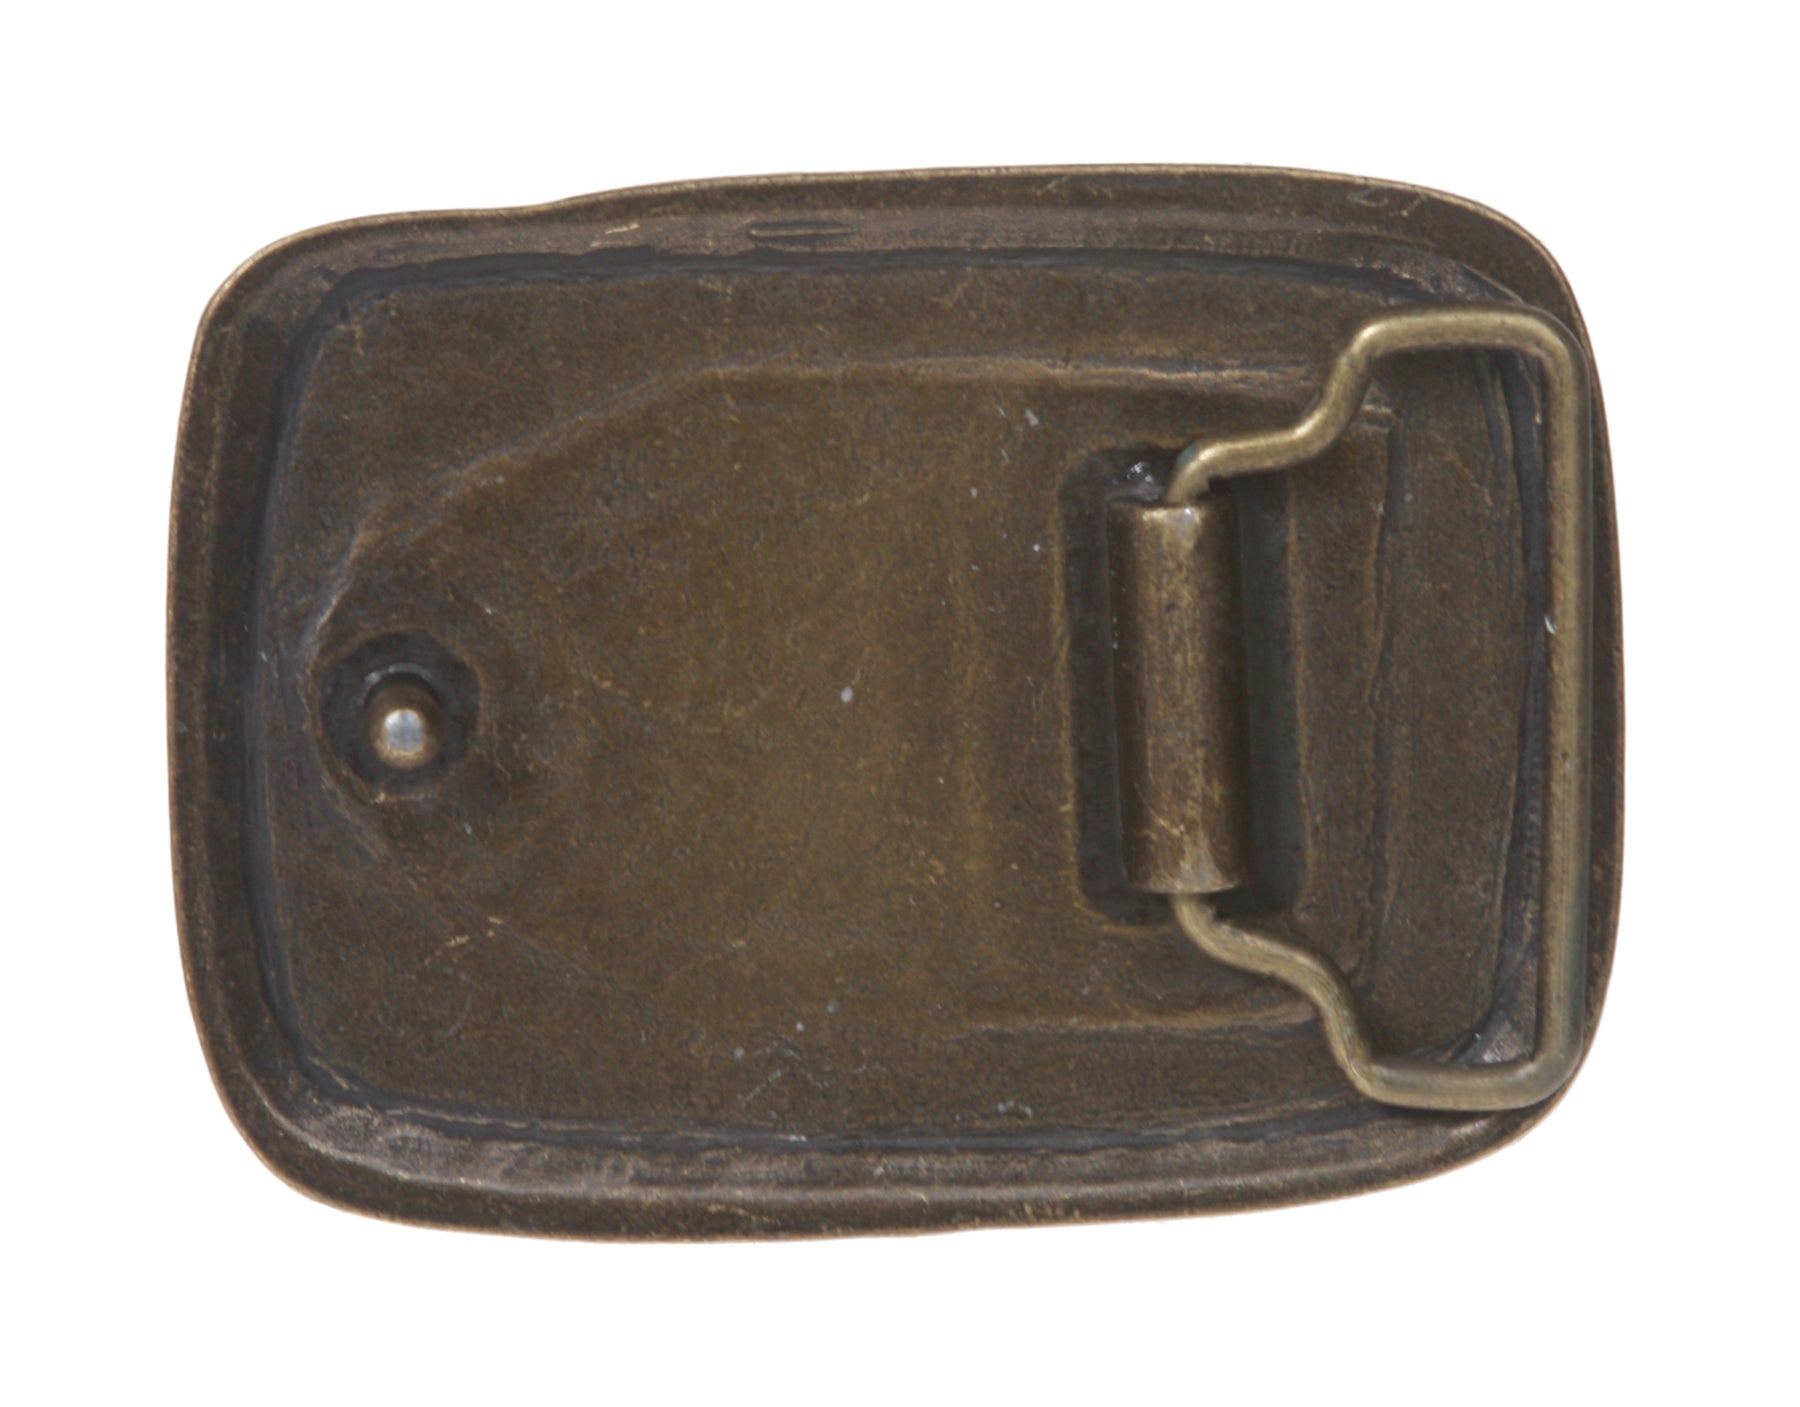 Western Rectangular Hammered Engraving Antique Belt Buckle